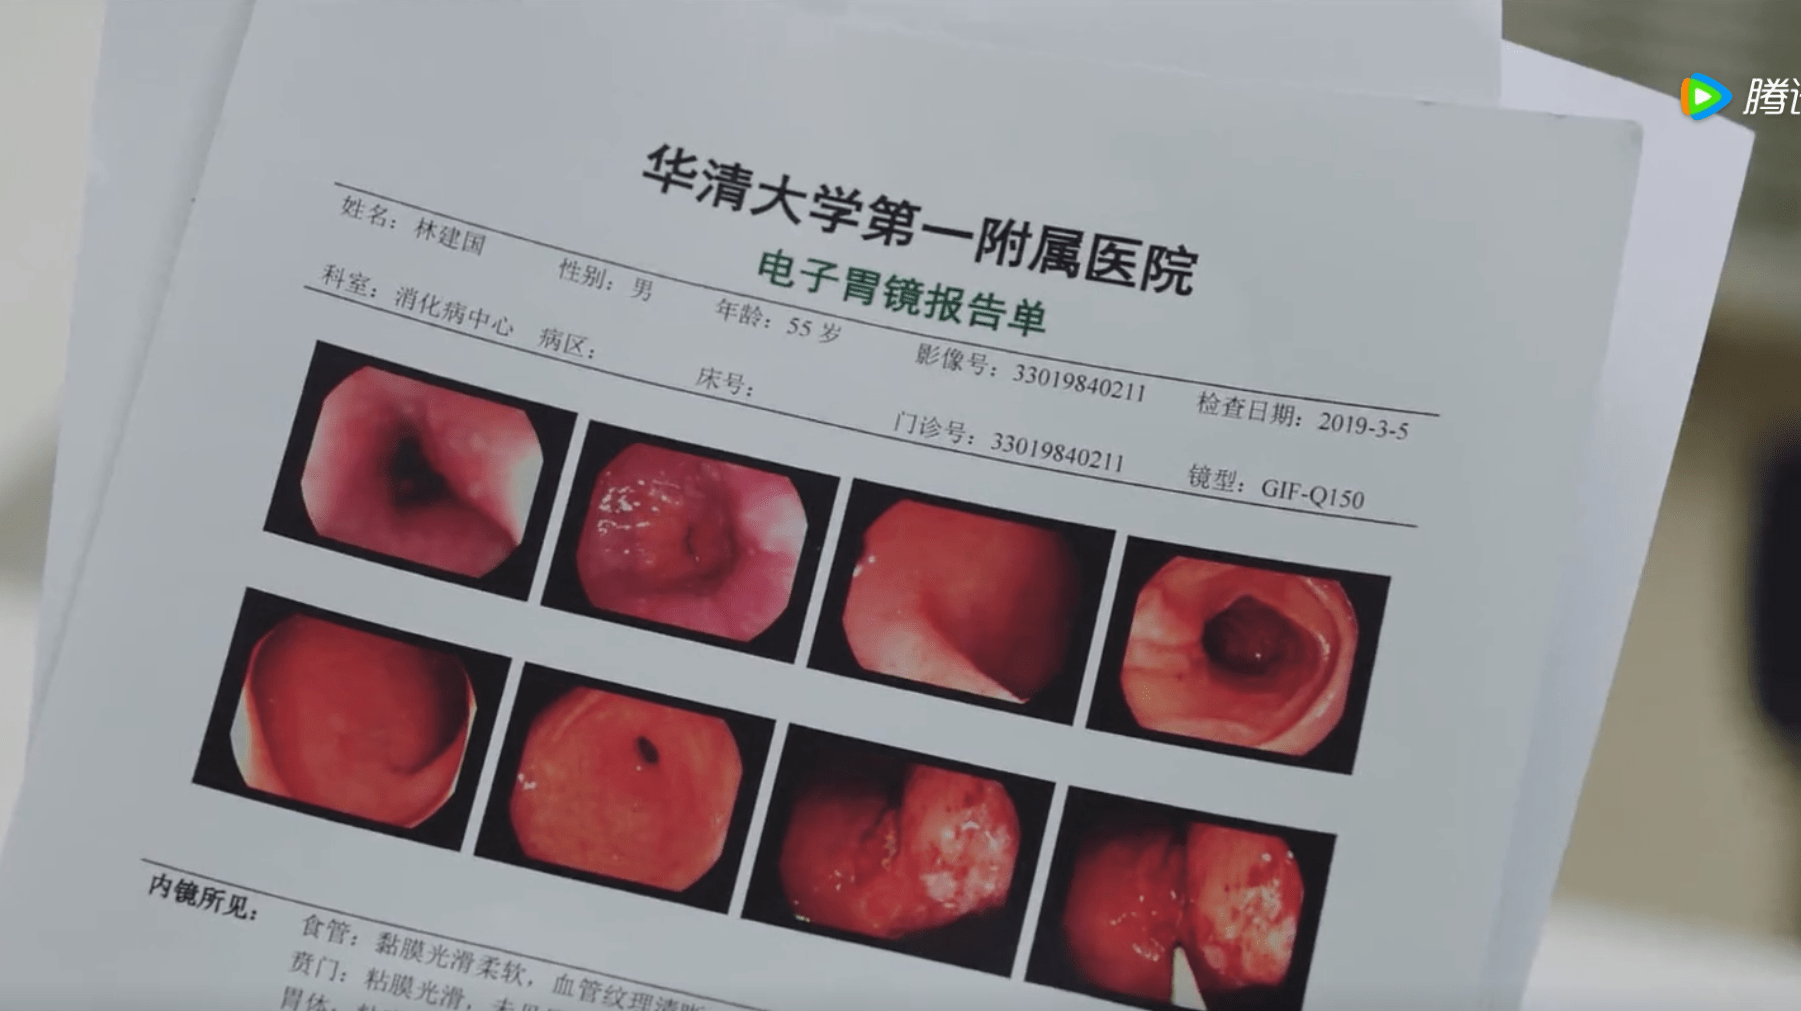 胃溃疡胃镜报告单图片